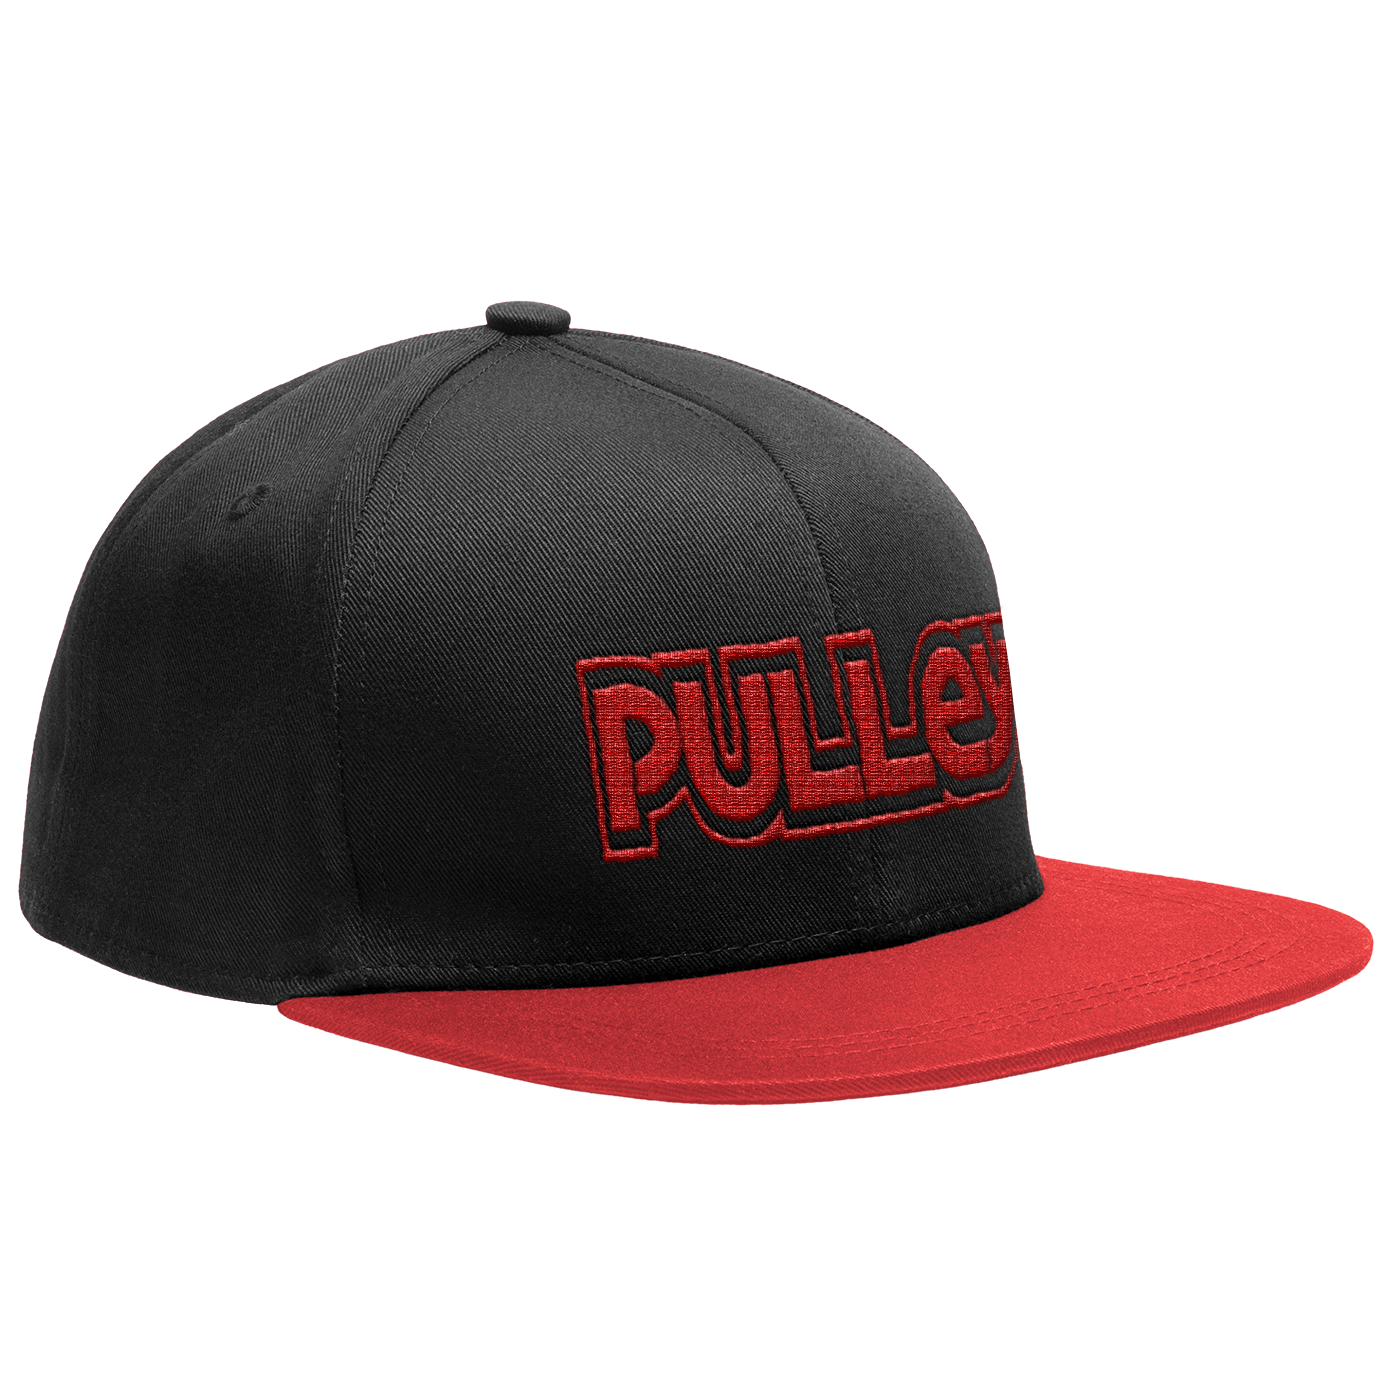 PULLEY - "Red Logo" (Black) (Flat Bill Snapback Cap)